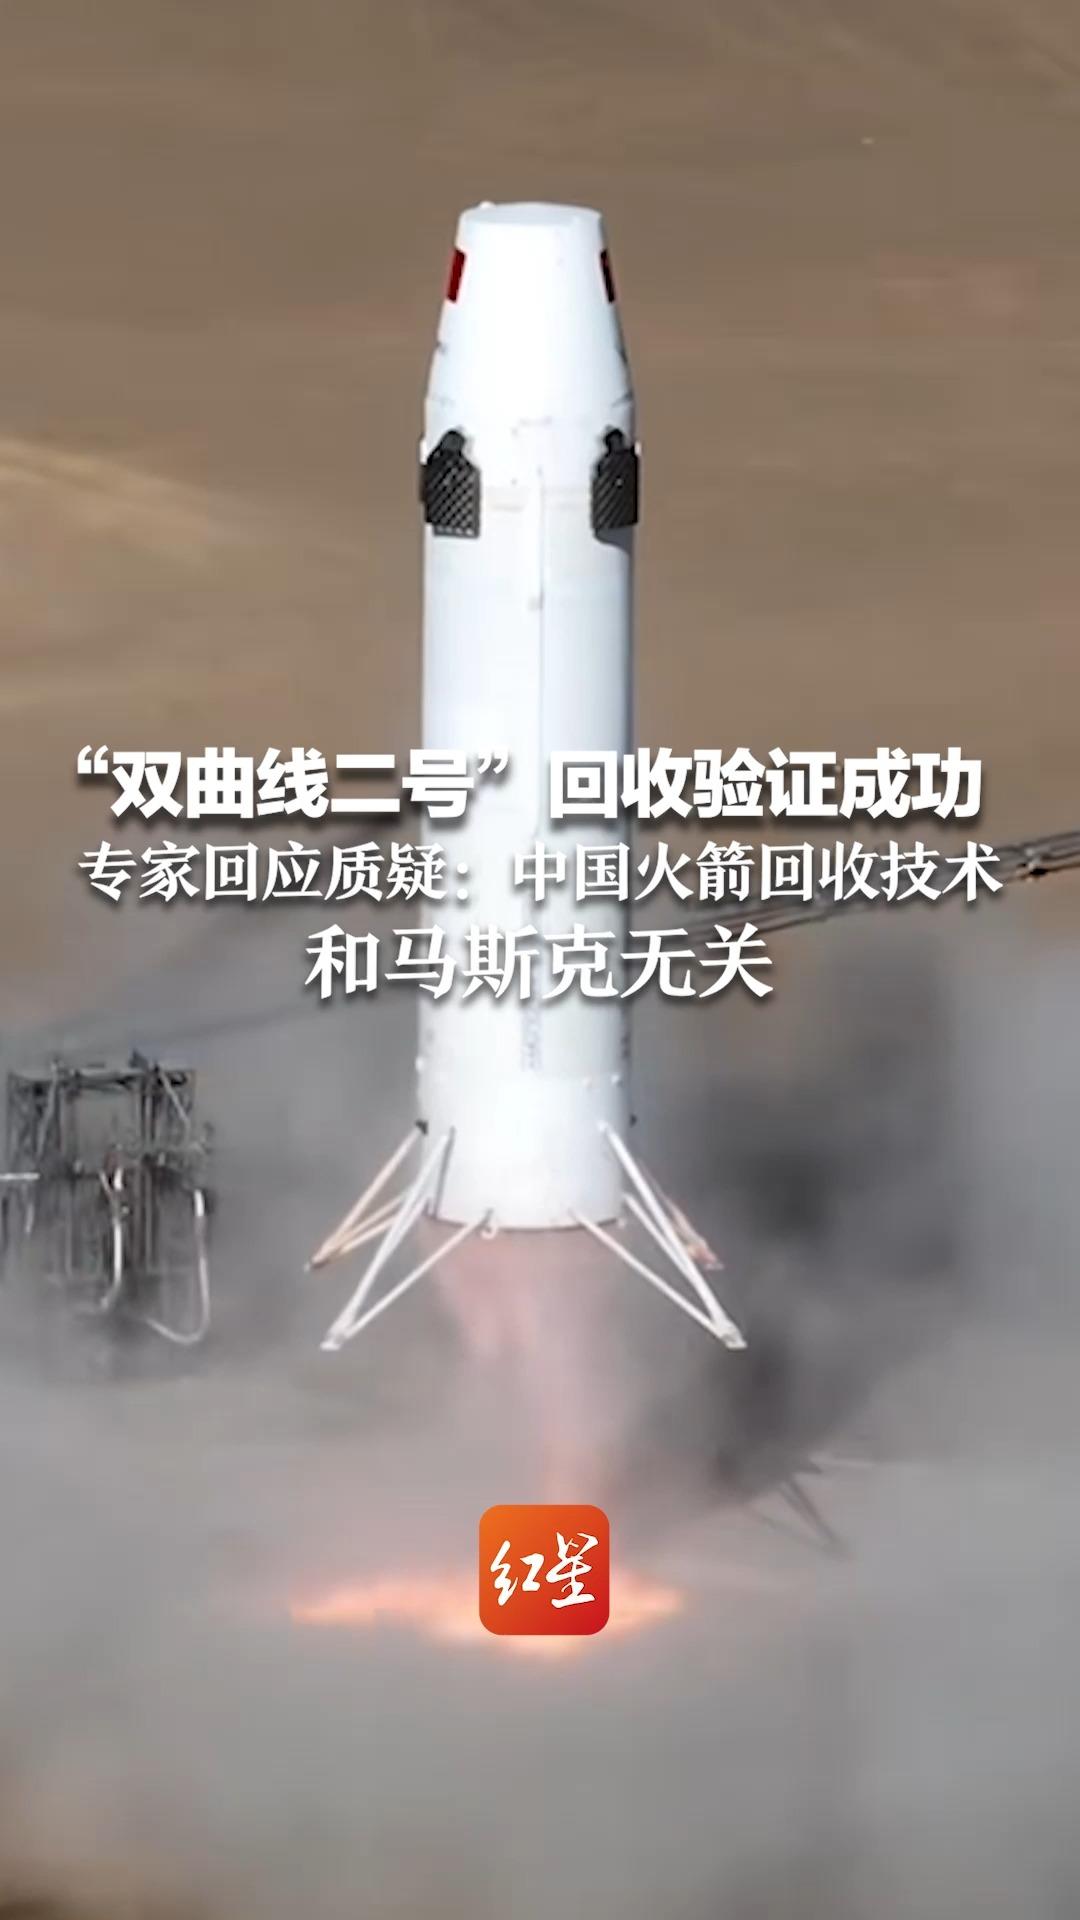 “双曲线二号”回收验证成功 专家回应质疑：中国火箭回收技术和马斯克无关